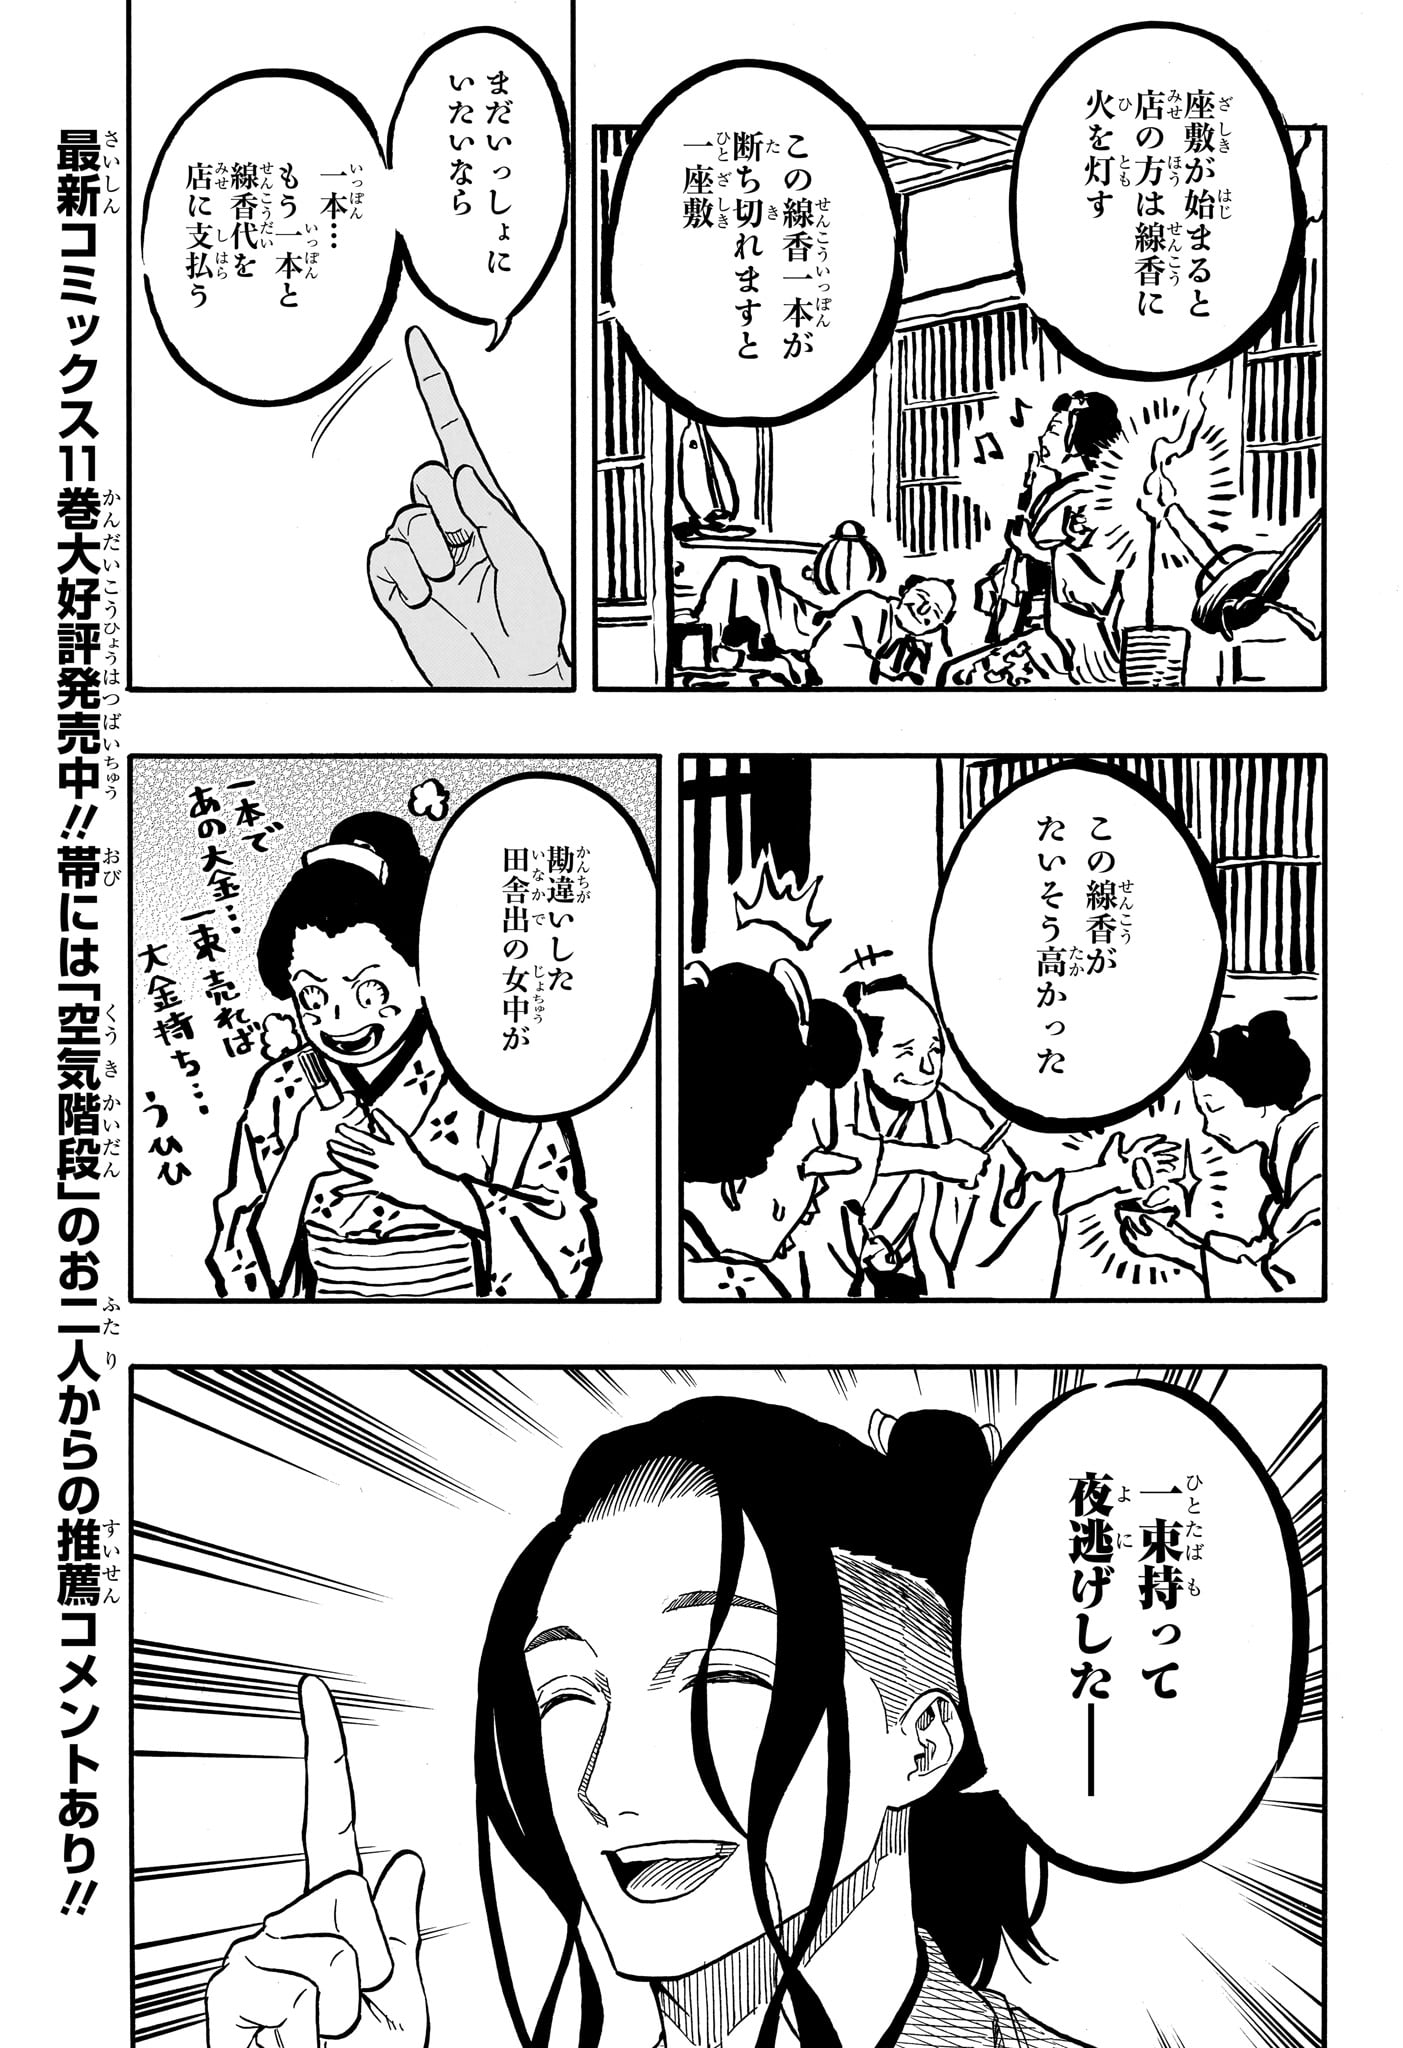 Akane-Banashi - Chapter 111 - Page 3